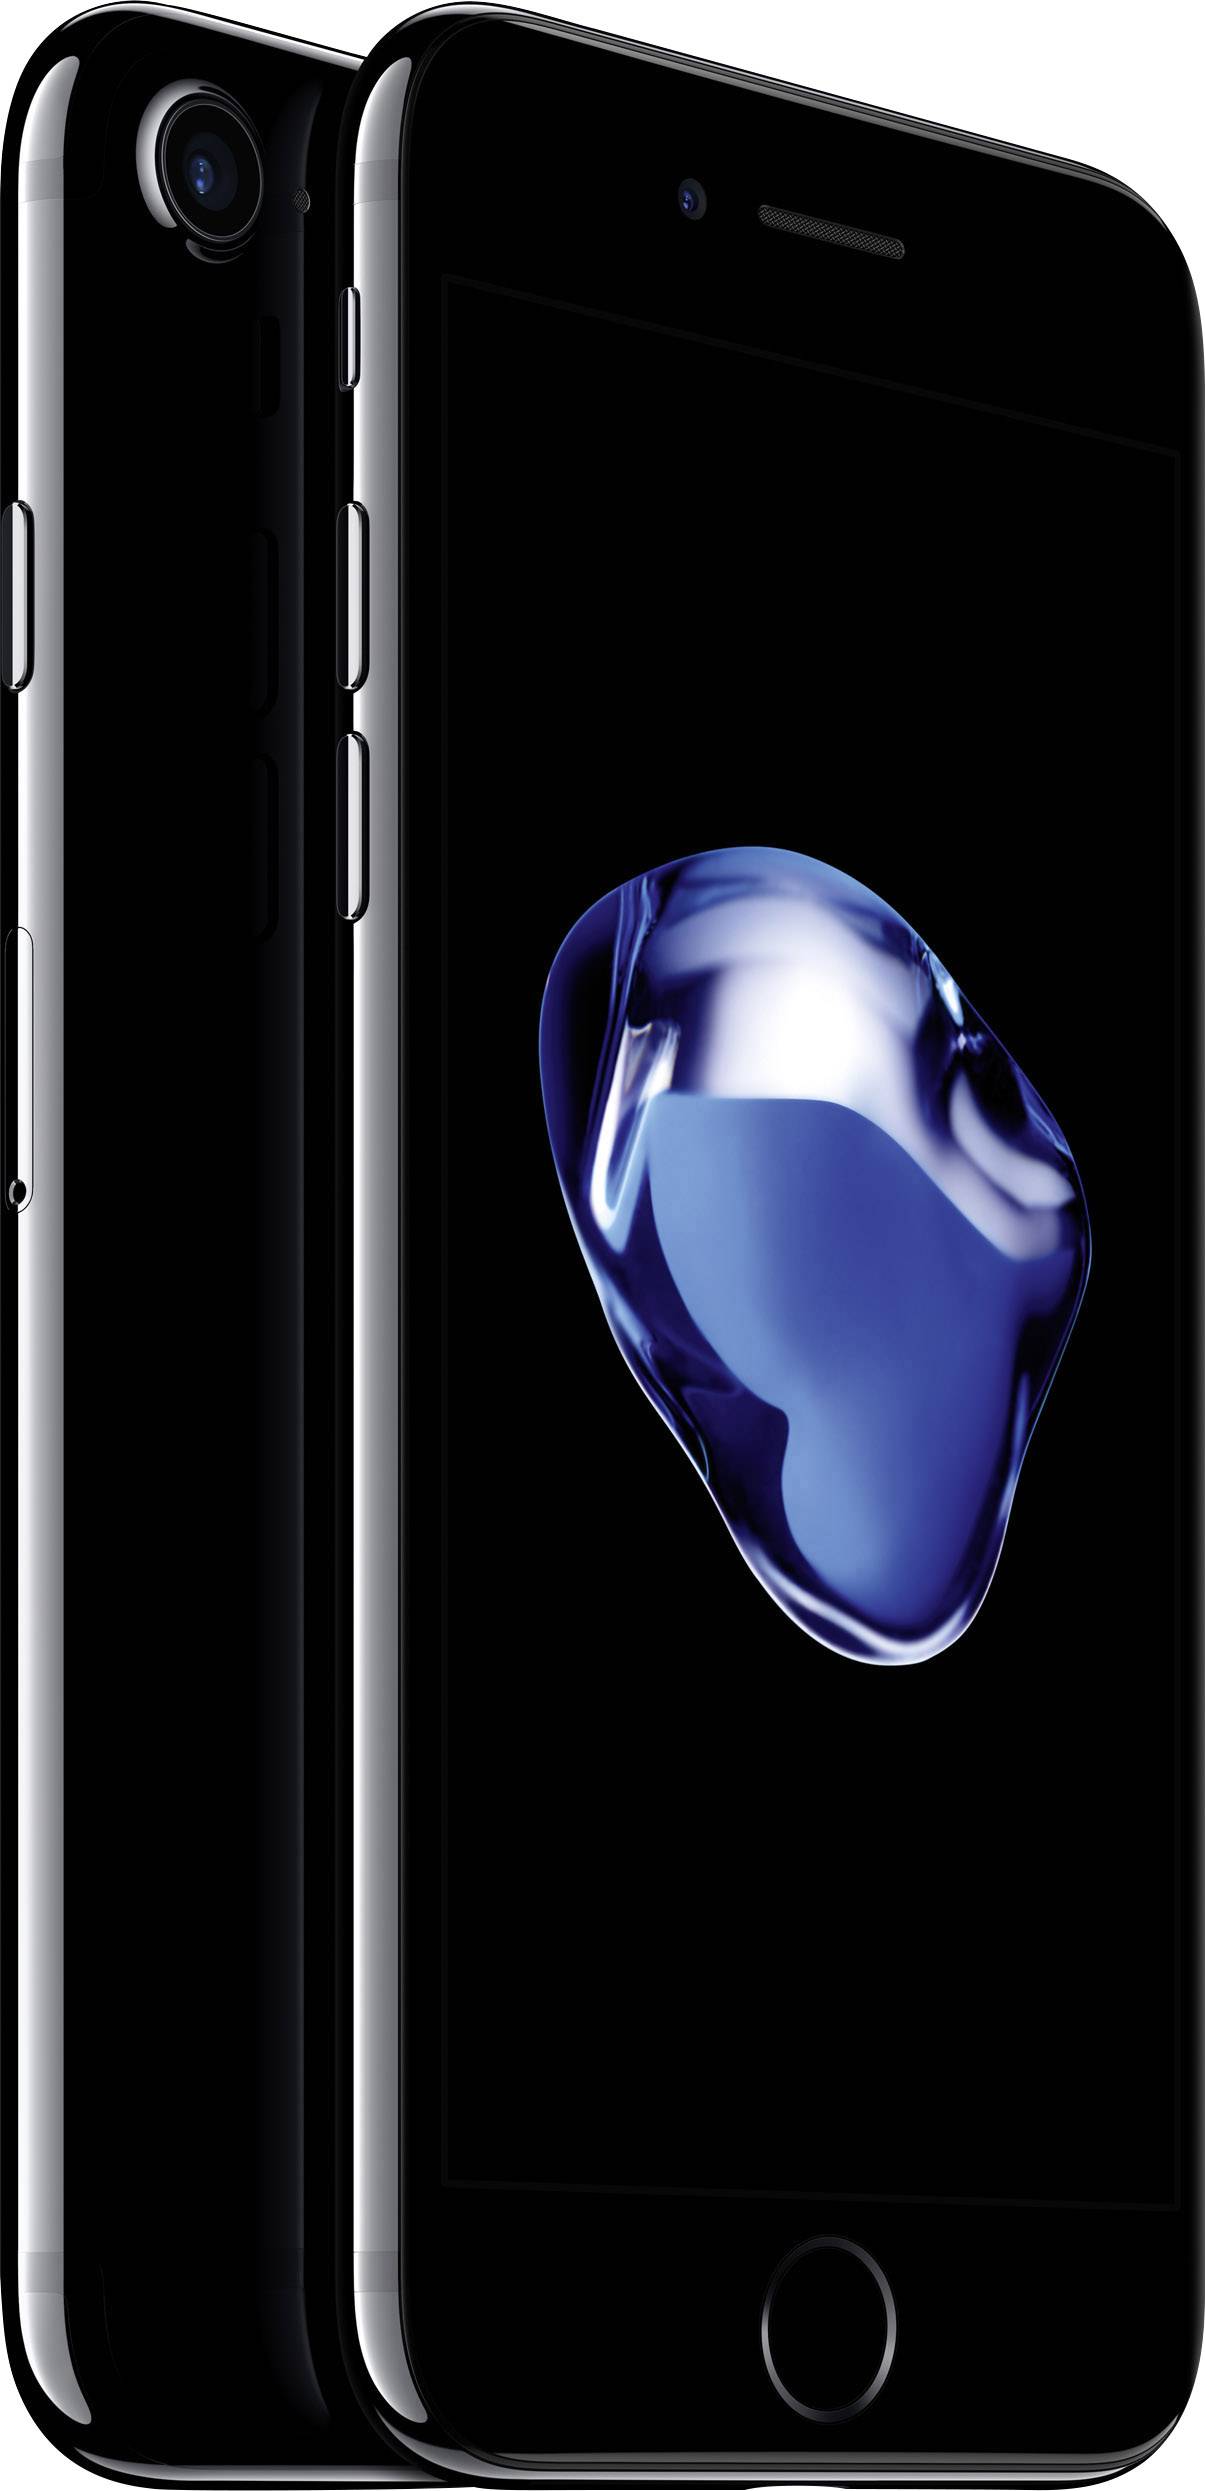 Apple iPhone 7 iPhone 128 GB 11.9 cm (4.7 inch) Diamond black iOS 10 |  Conrad.com